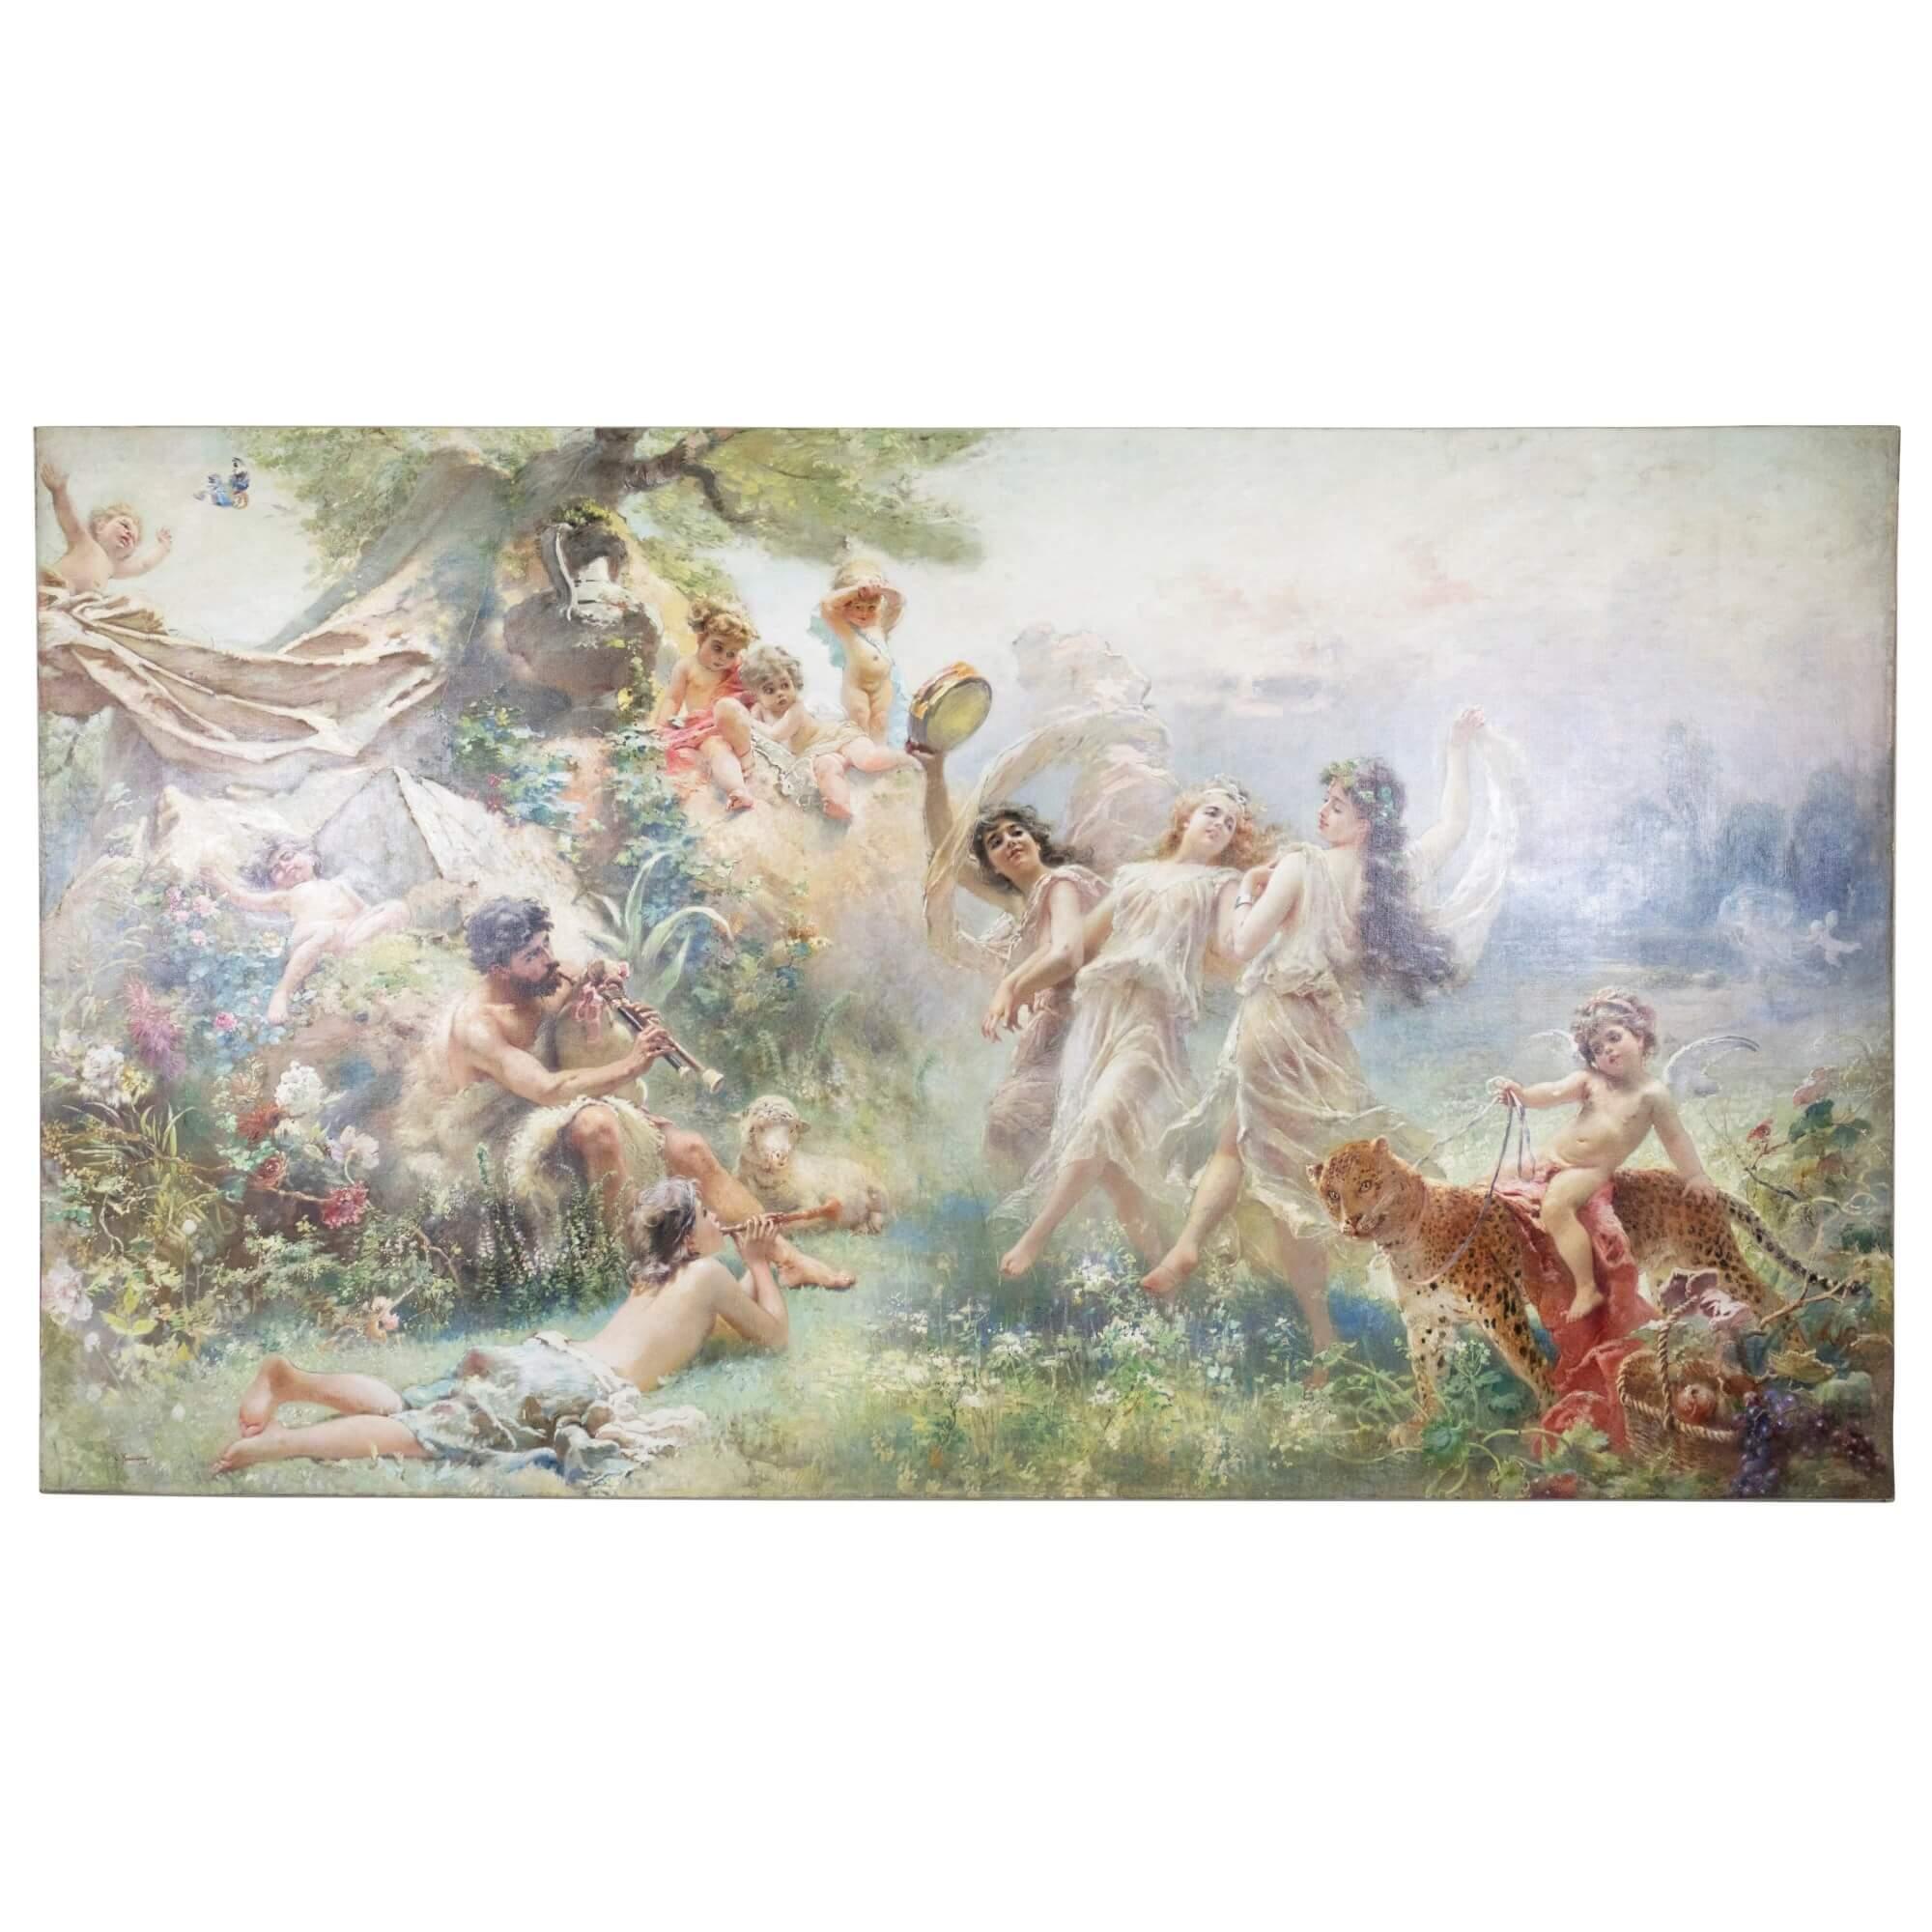 Konstantin Egorovich Makovsky Landscape Painting - 'Happy Arcadia' large mythological oil painting by Makovsky 